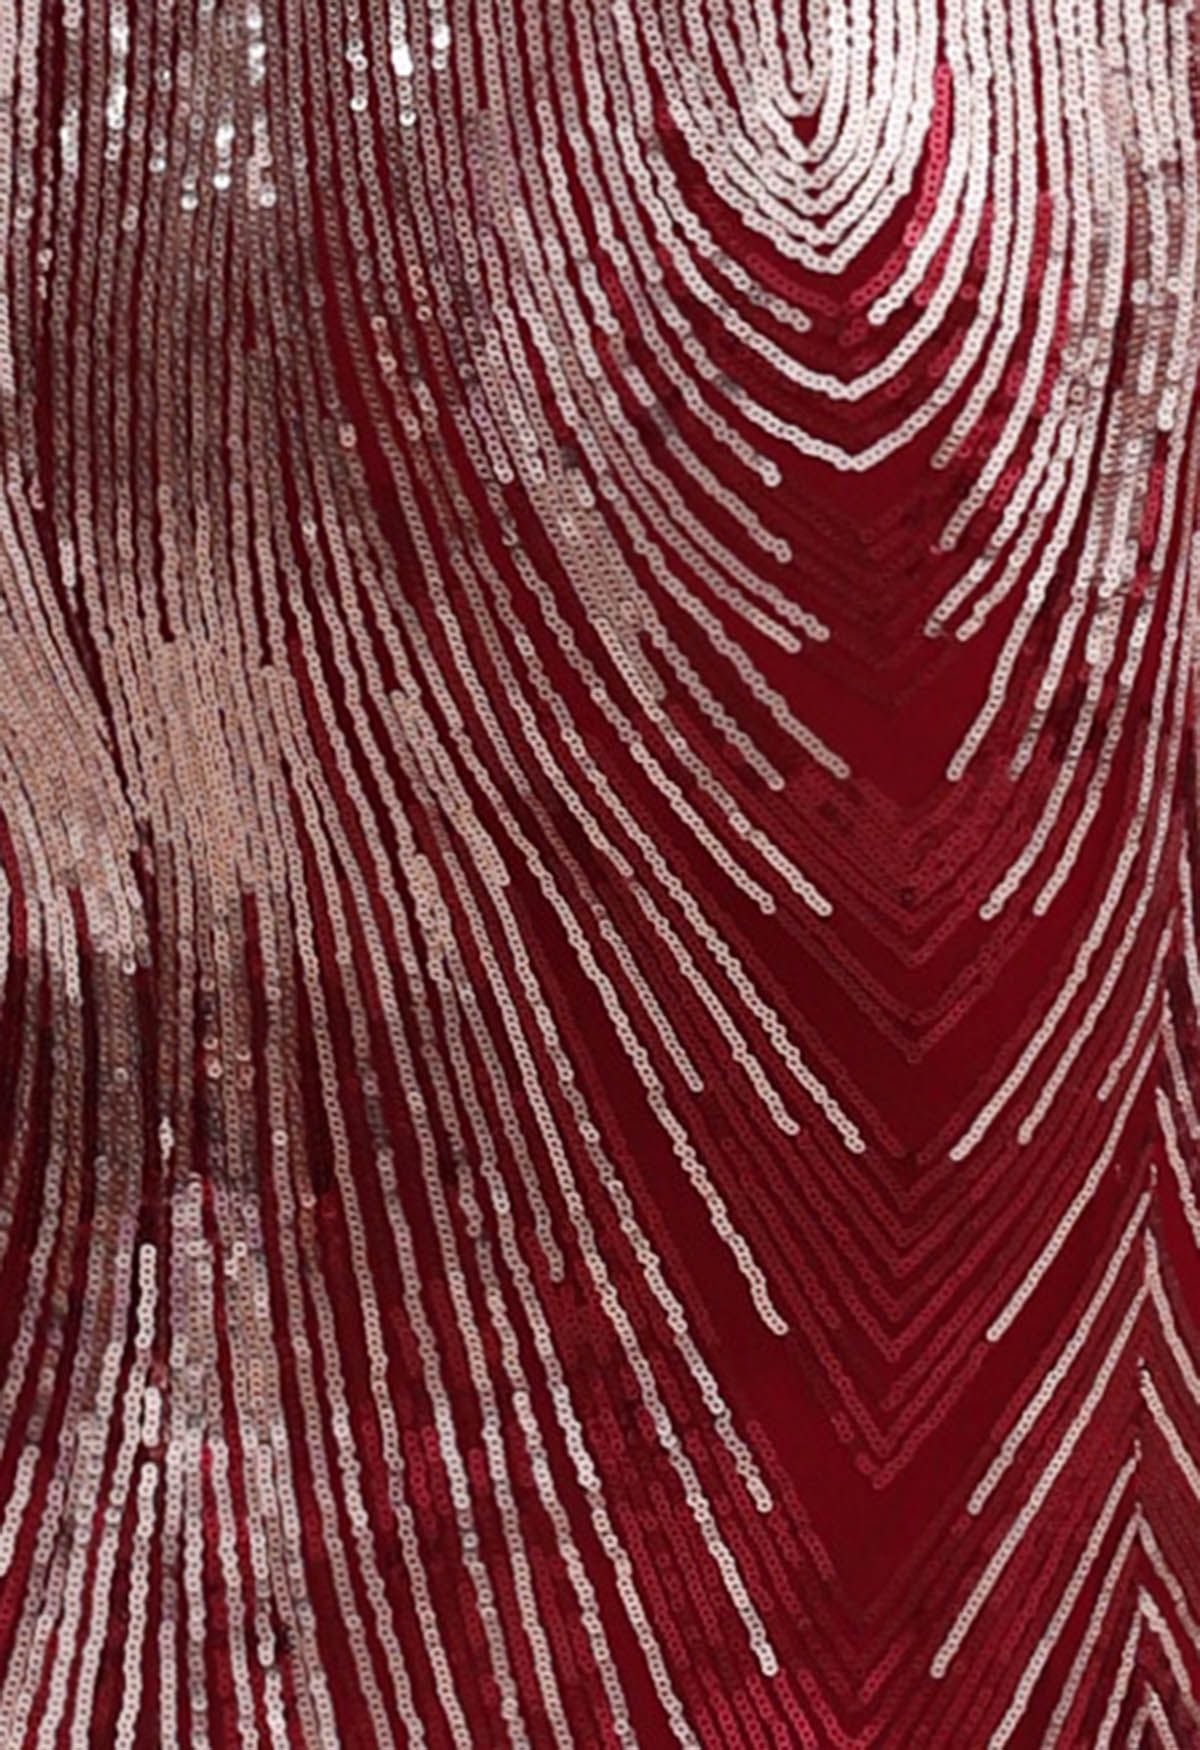 Ärmelloses, figurbetontes Kleid mit schillernden Pailletten in Burgund